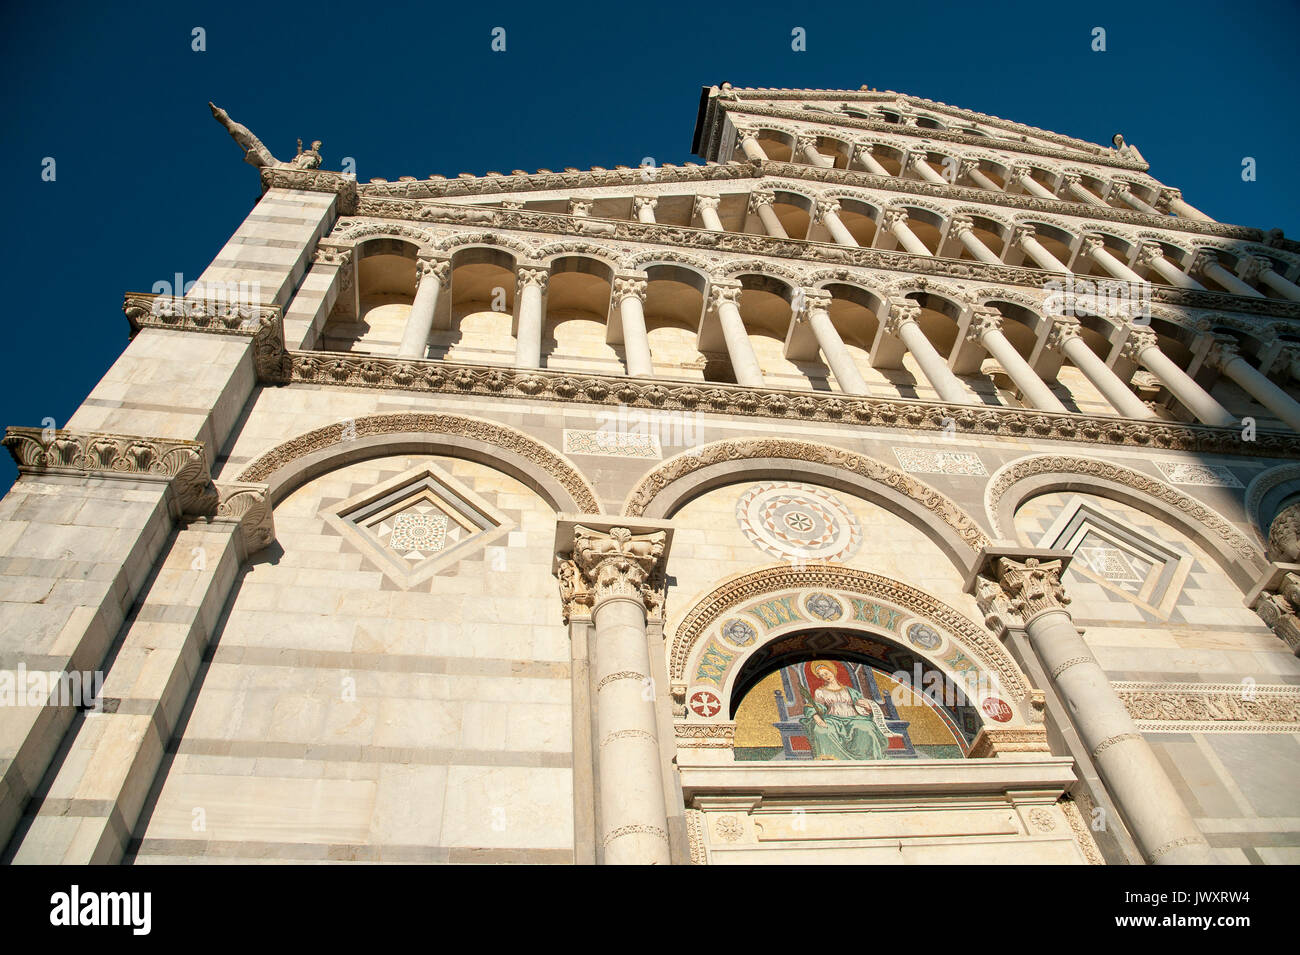 Romanesque Cattedrale Metropolitana Primaziale di Santa Maria Assunta (Pisa Cathedral) on Campo dei Miracoli listed World Heritage by UNESCO in Pisa,  Stock Photo